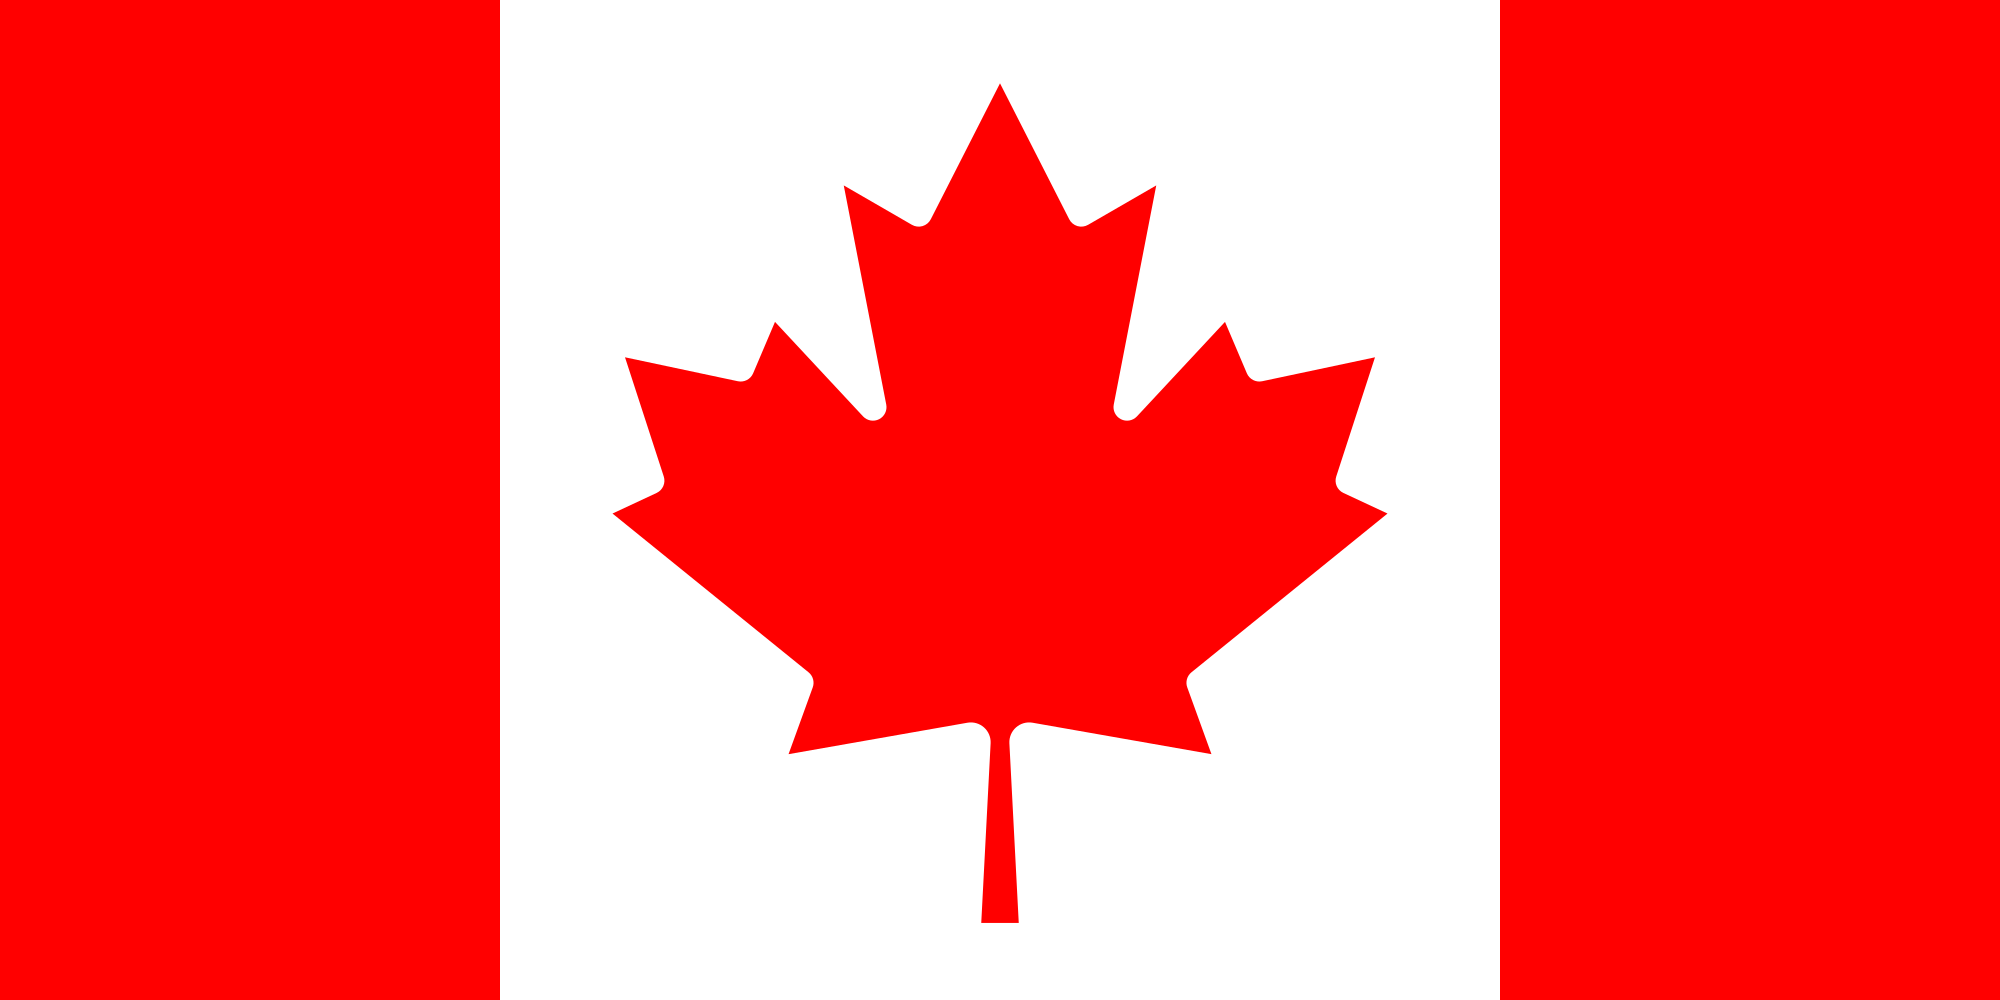 Canada flag ayahuasca legality map